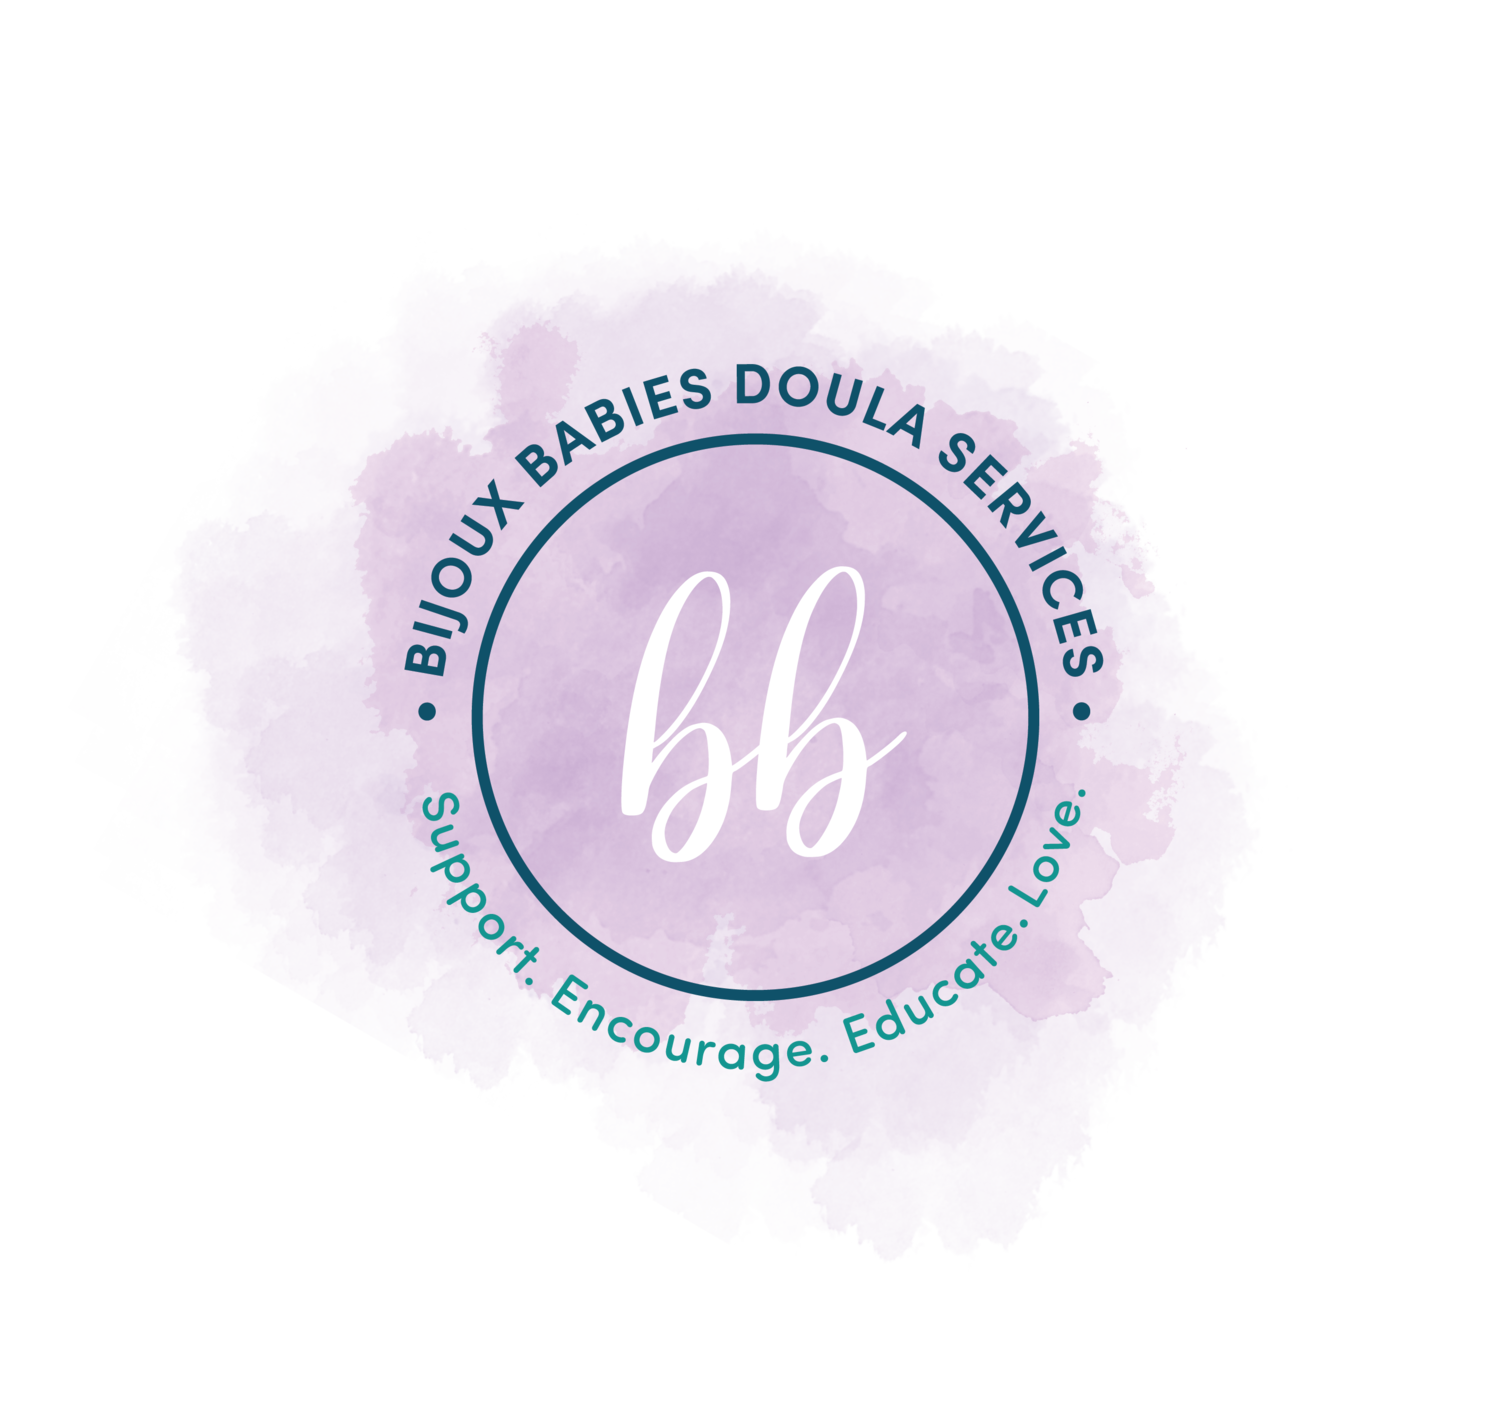 Bijoux Babies Doula Services